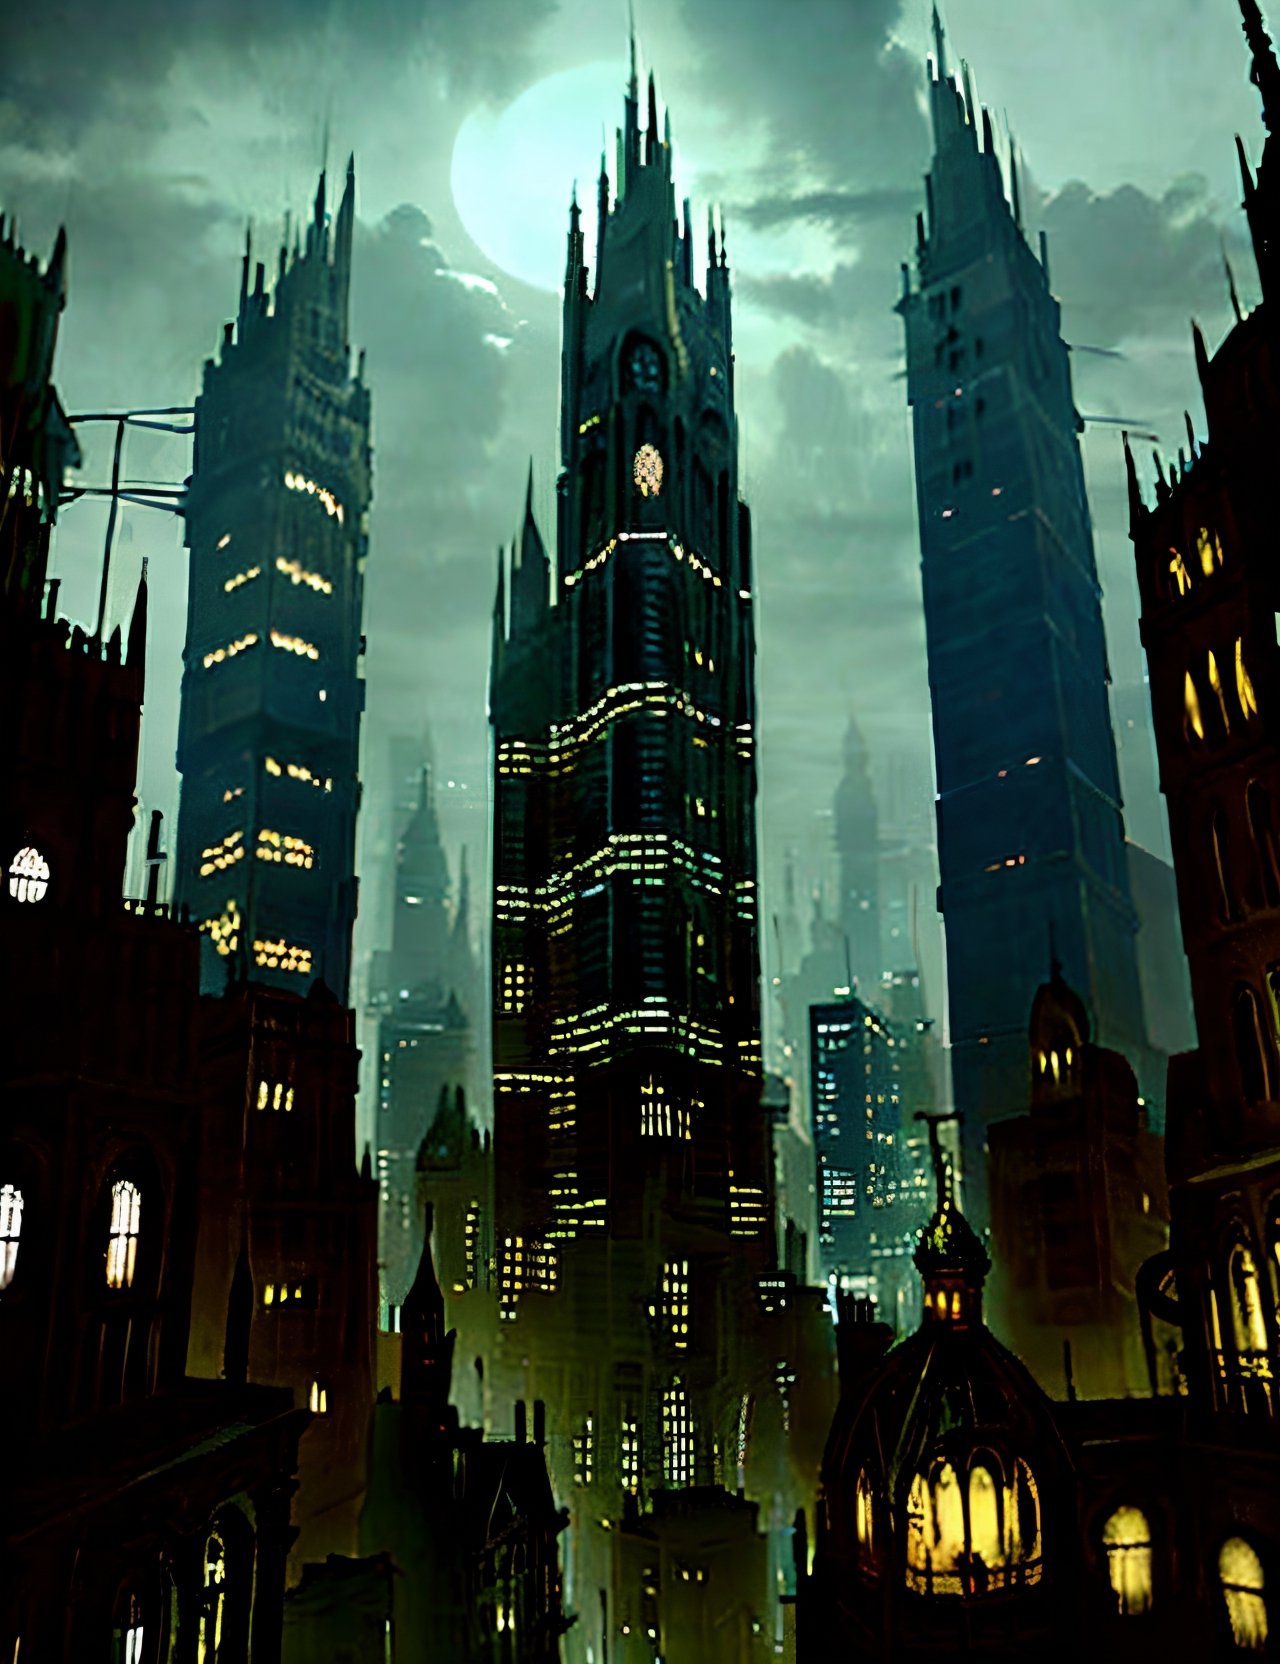 City DonMn1ghtm4re, towering buildings